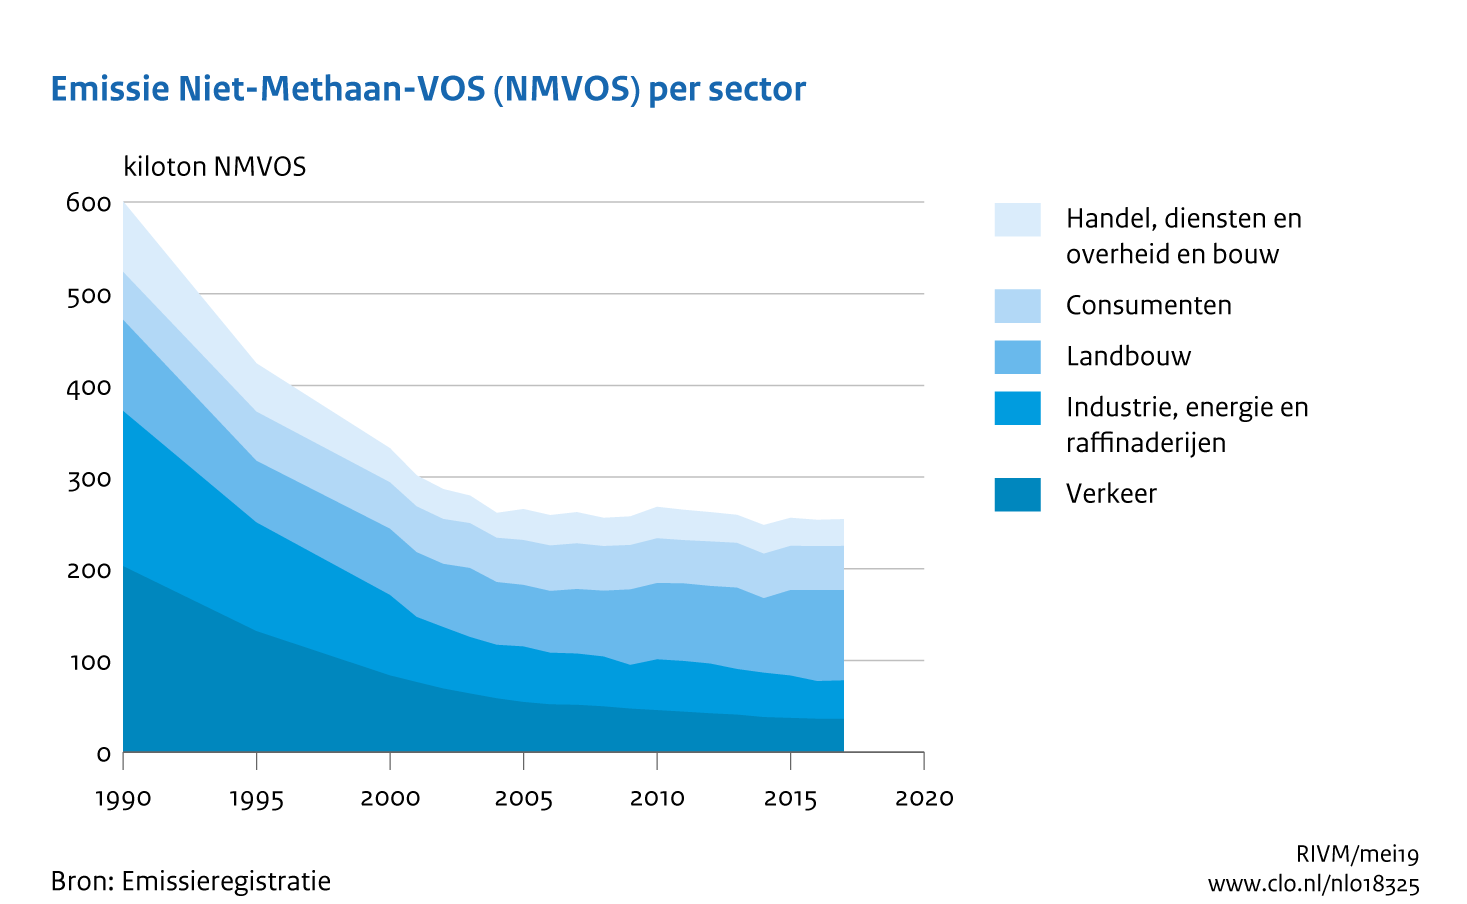 Figuur NMVOS-emissie per sector. In de rest van de tekst wordt deze figuur uitgebreider uitgelegd.